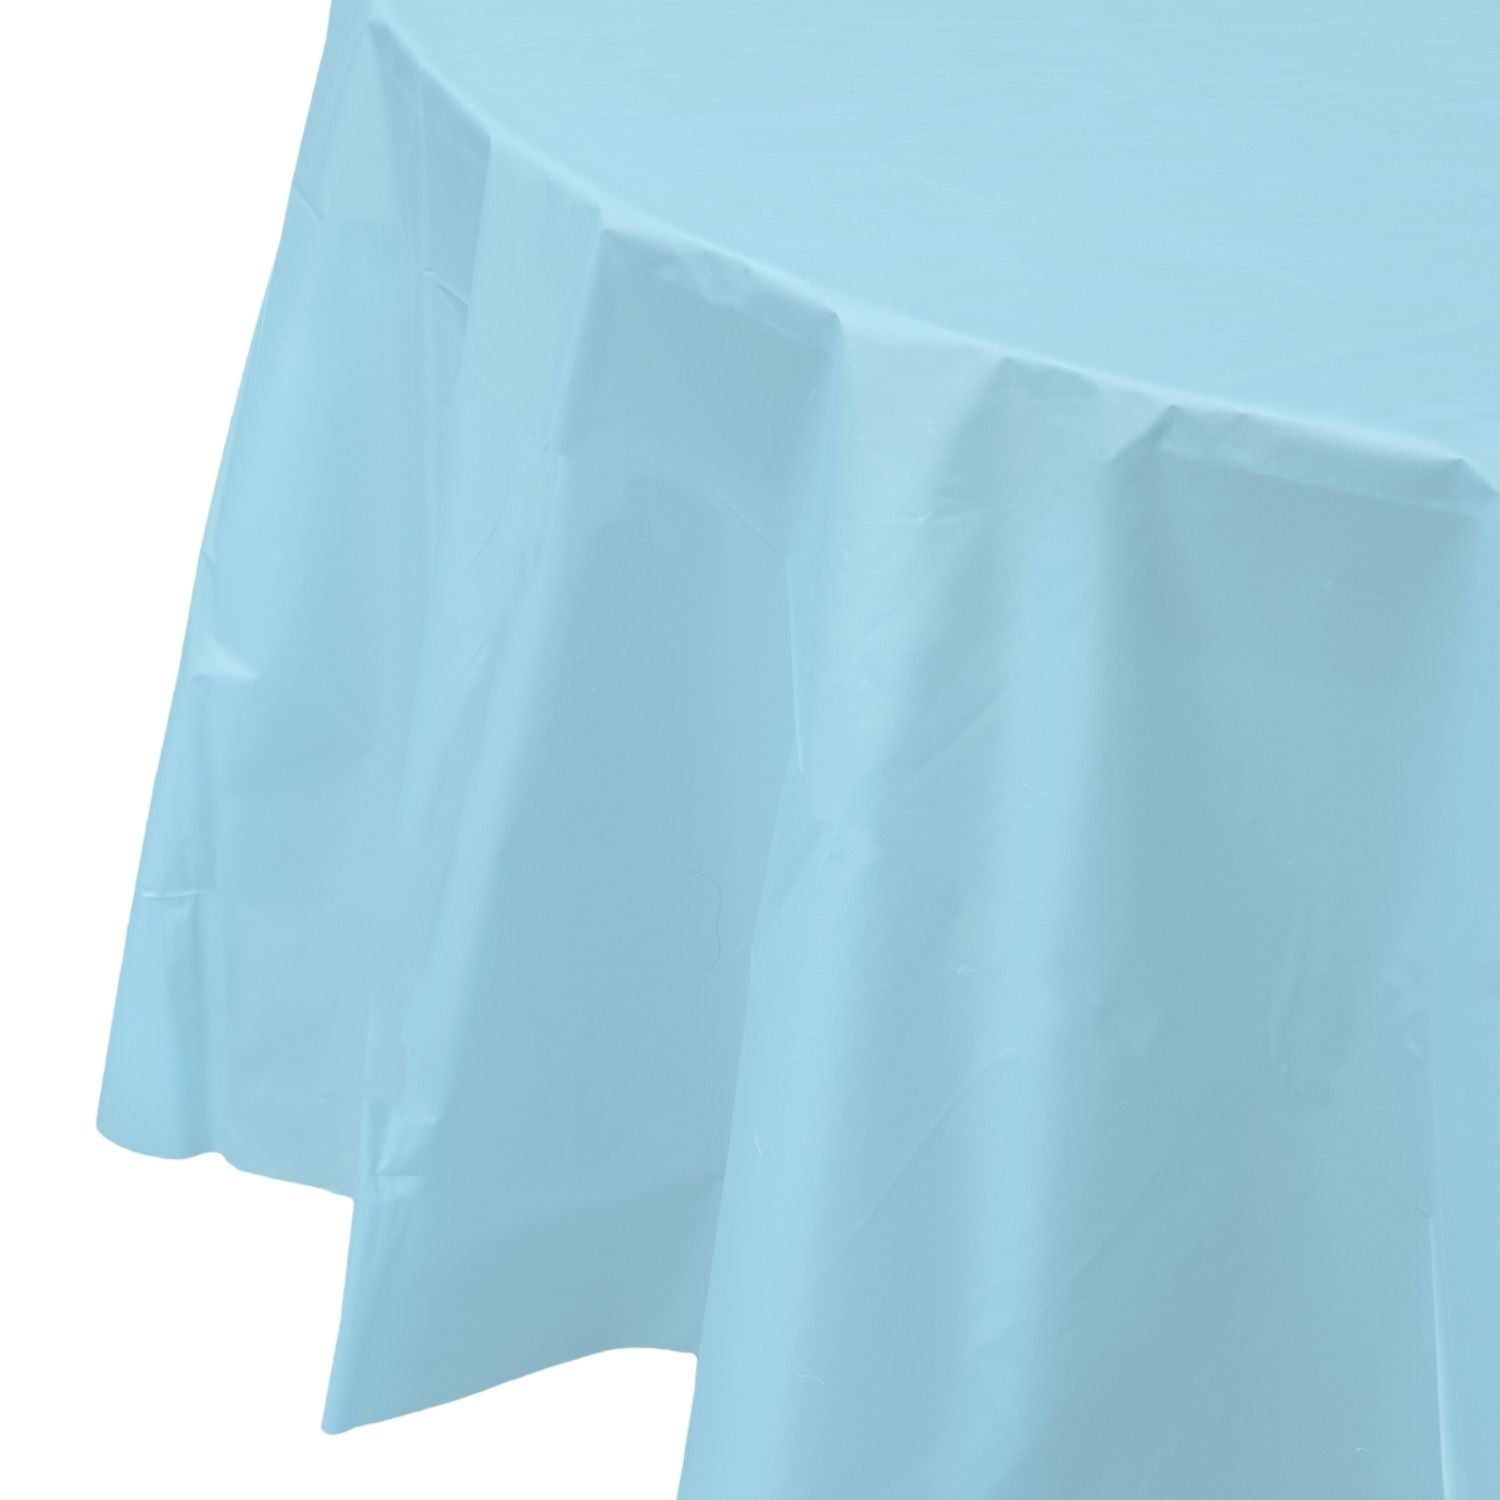 Premium Round Light Blue Plastic Tablecloth | 96 Count